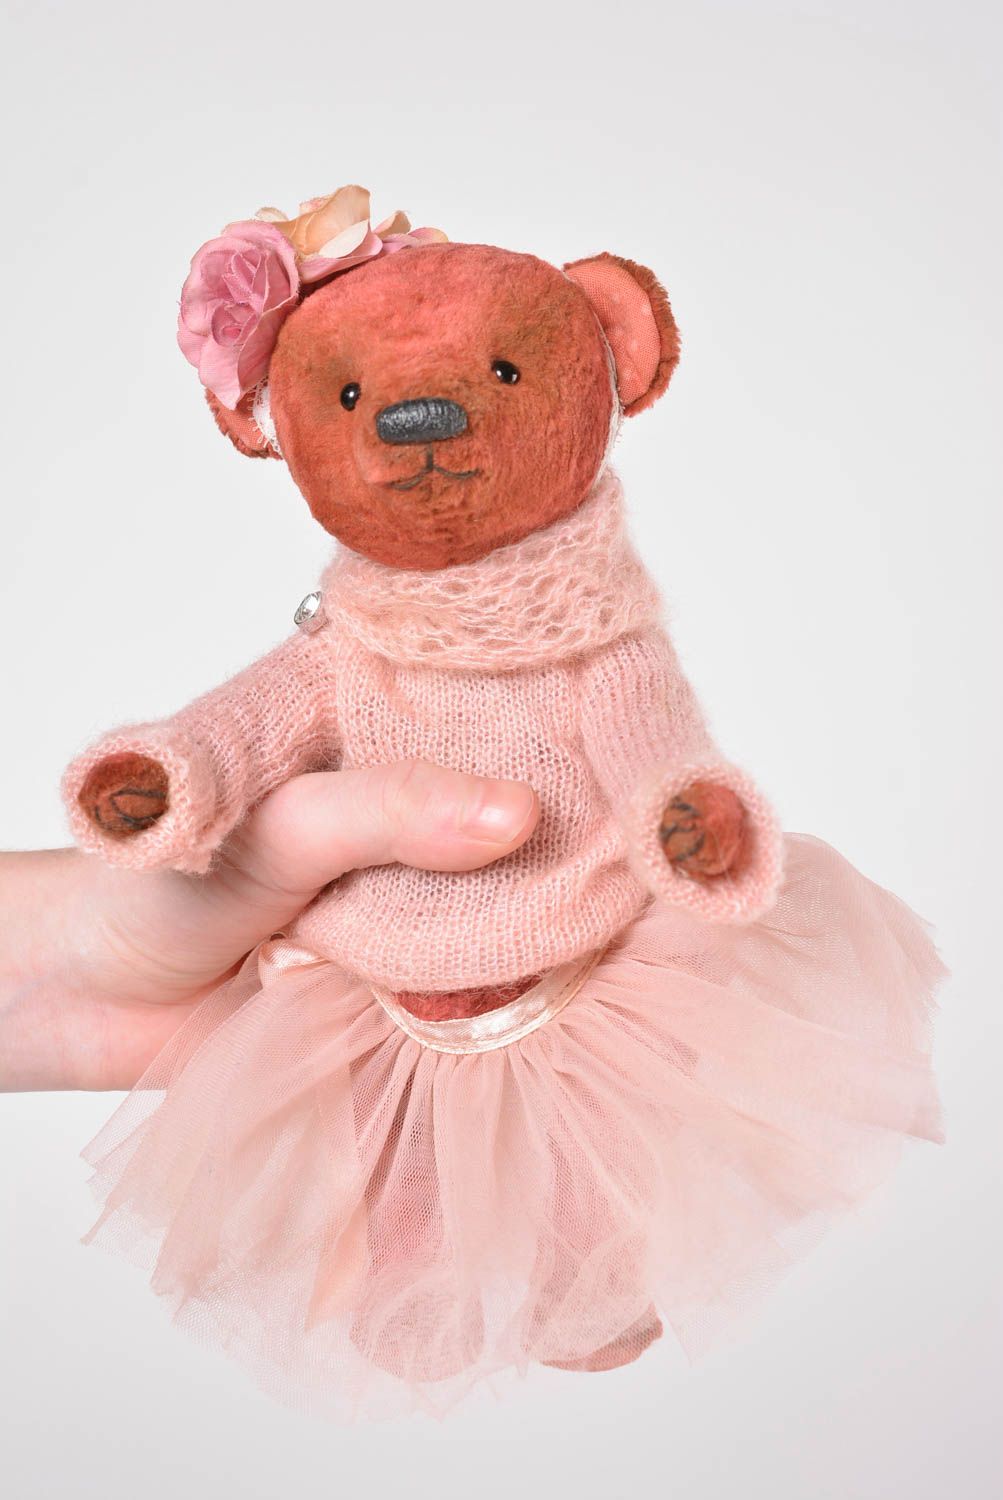 Плюшевый мишка игрушка ручной работы интересный подарок девушка в платье фото 2